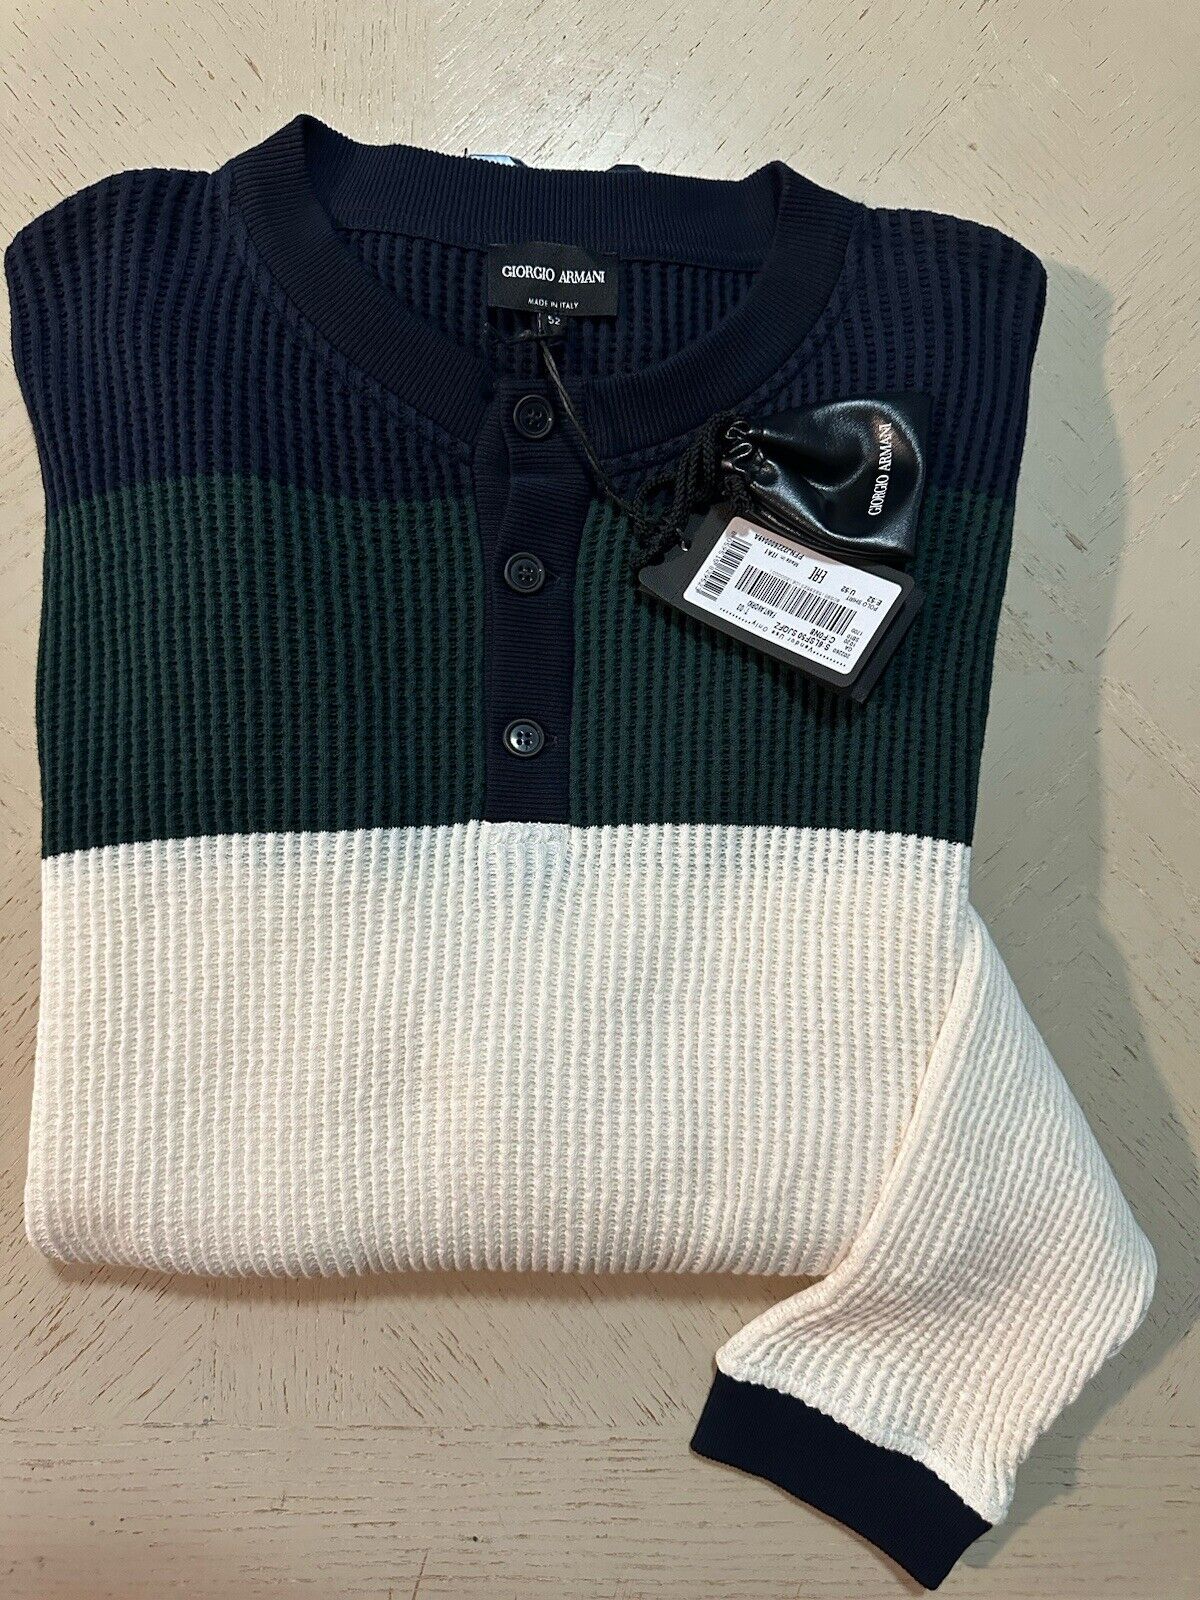 New $1295 Giorgio Armani Men’s Crewneck Sweater White/Blue/Green 52 US ( L )